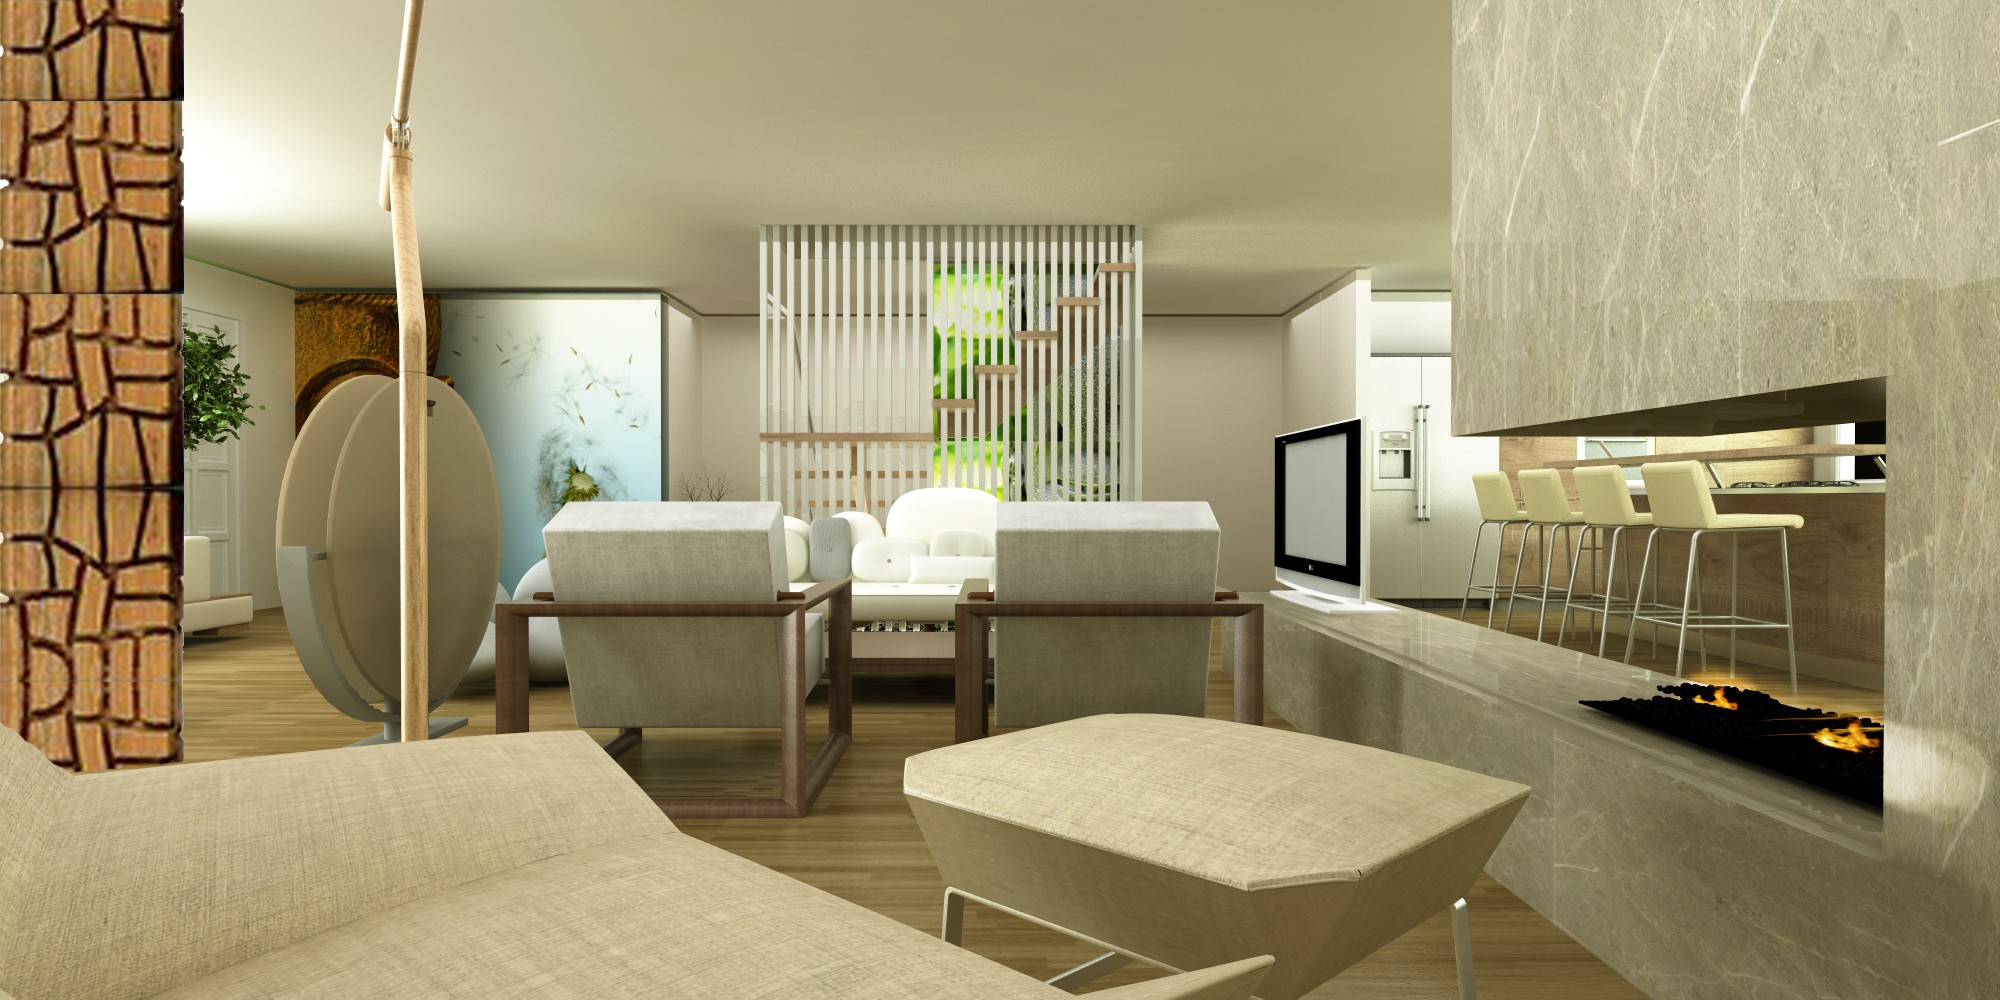 zen type living room designs